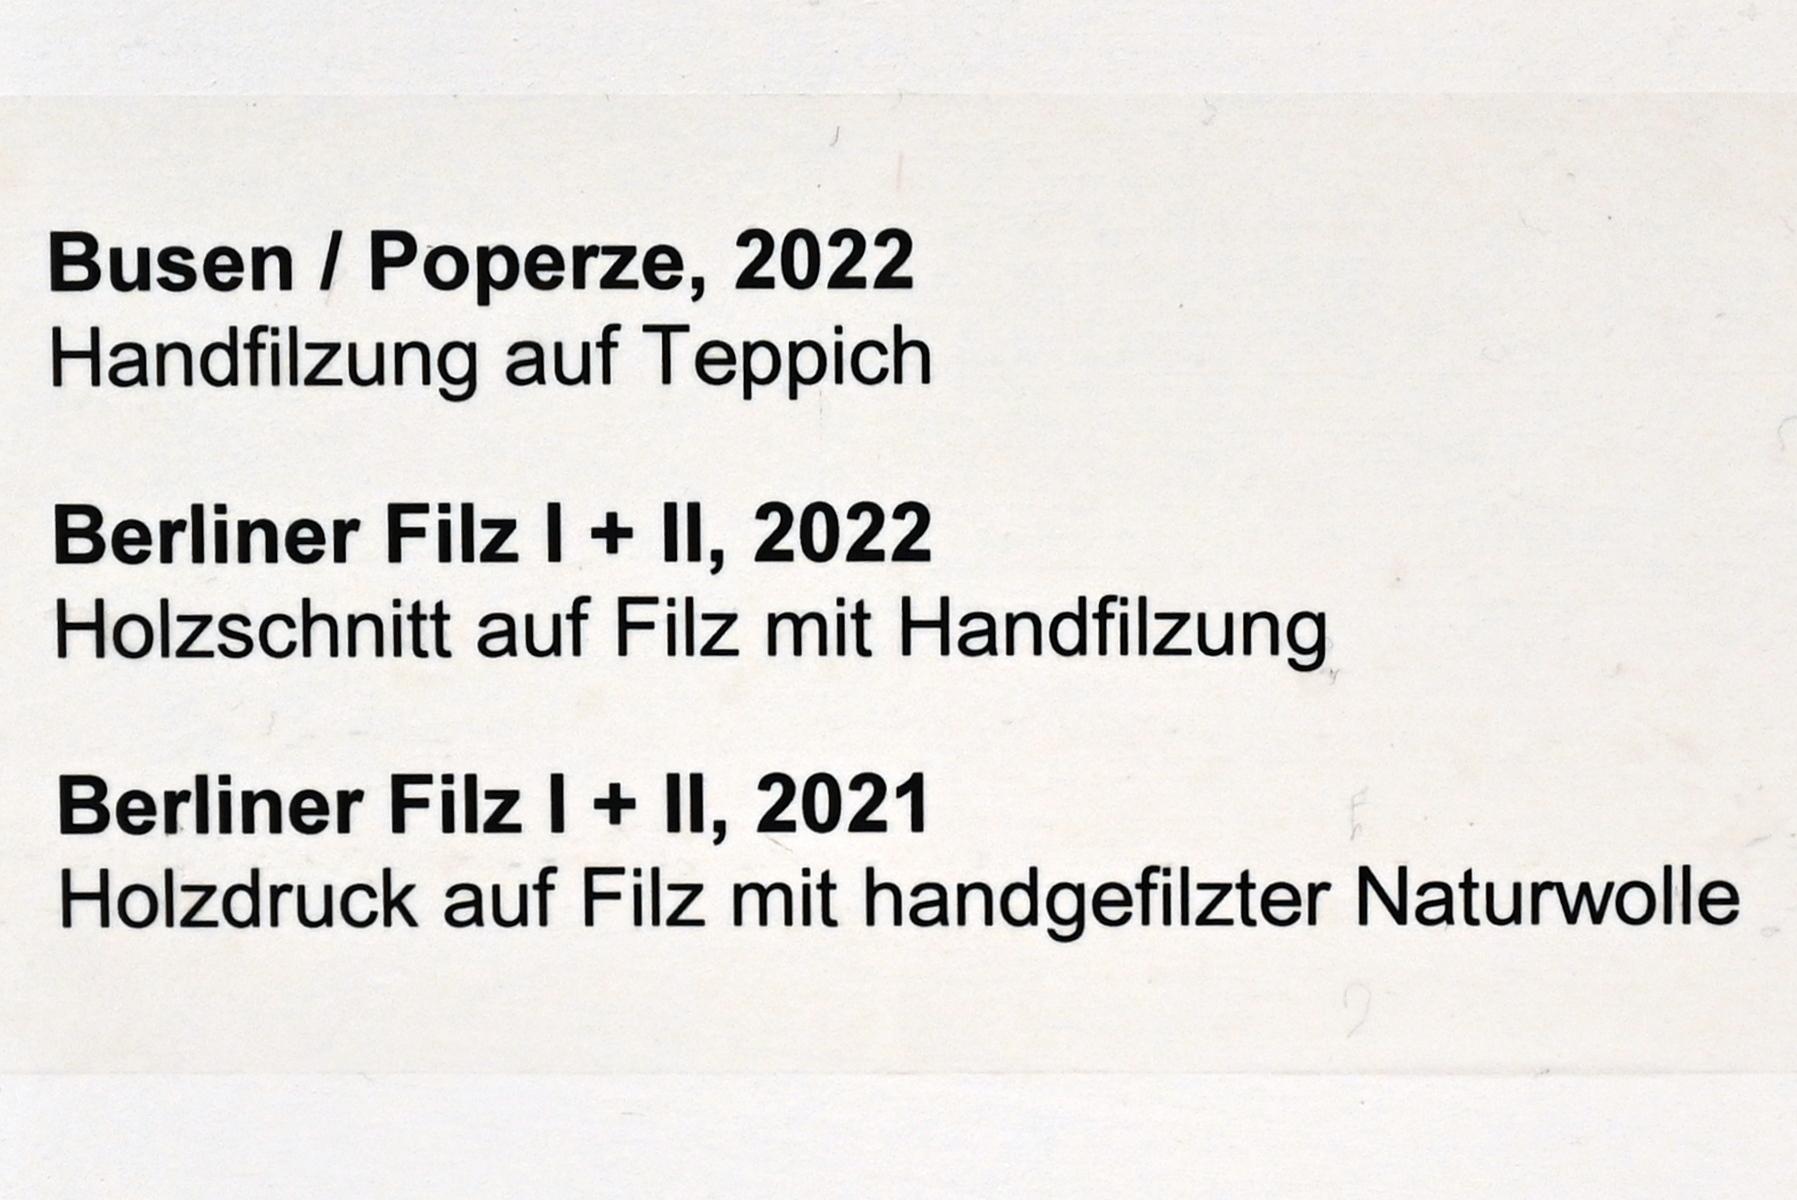 Verena Issel (2021–2022), Busen / Poperze, Neumarkt in der Oberpfalz, Museum Lothar Fischer, Ausstellung "VERENA ISSEL" vom 26.06.-09.10.2022, Raum 2, 2022, Bild 2/2